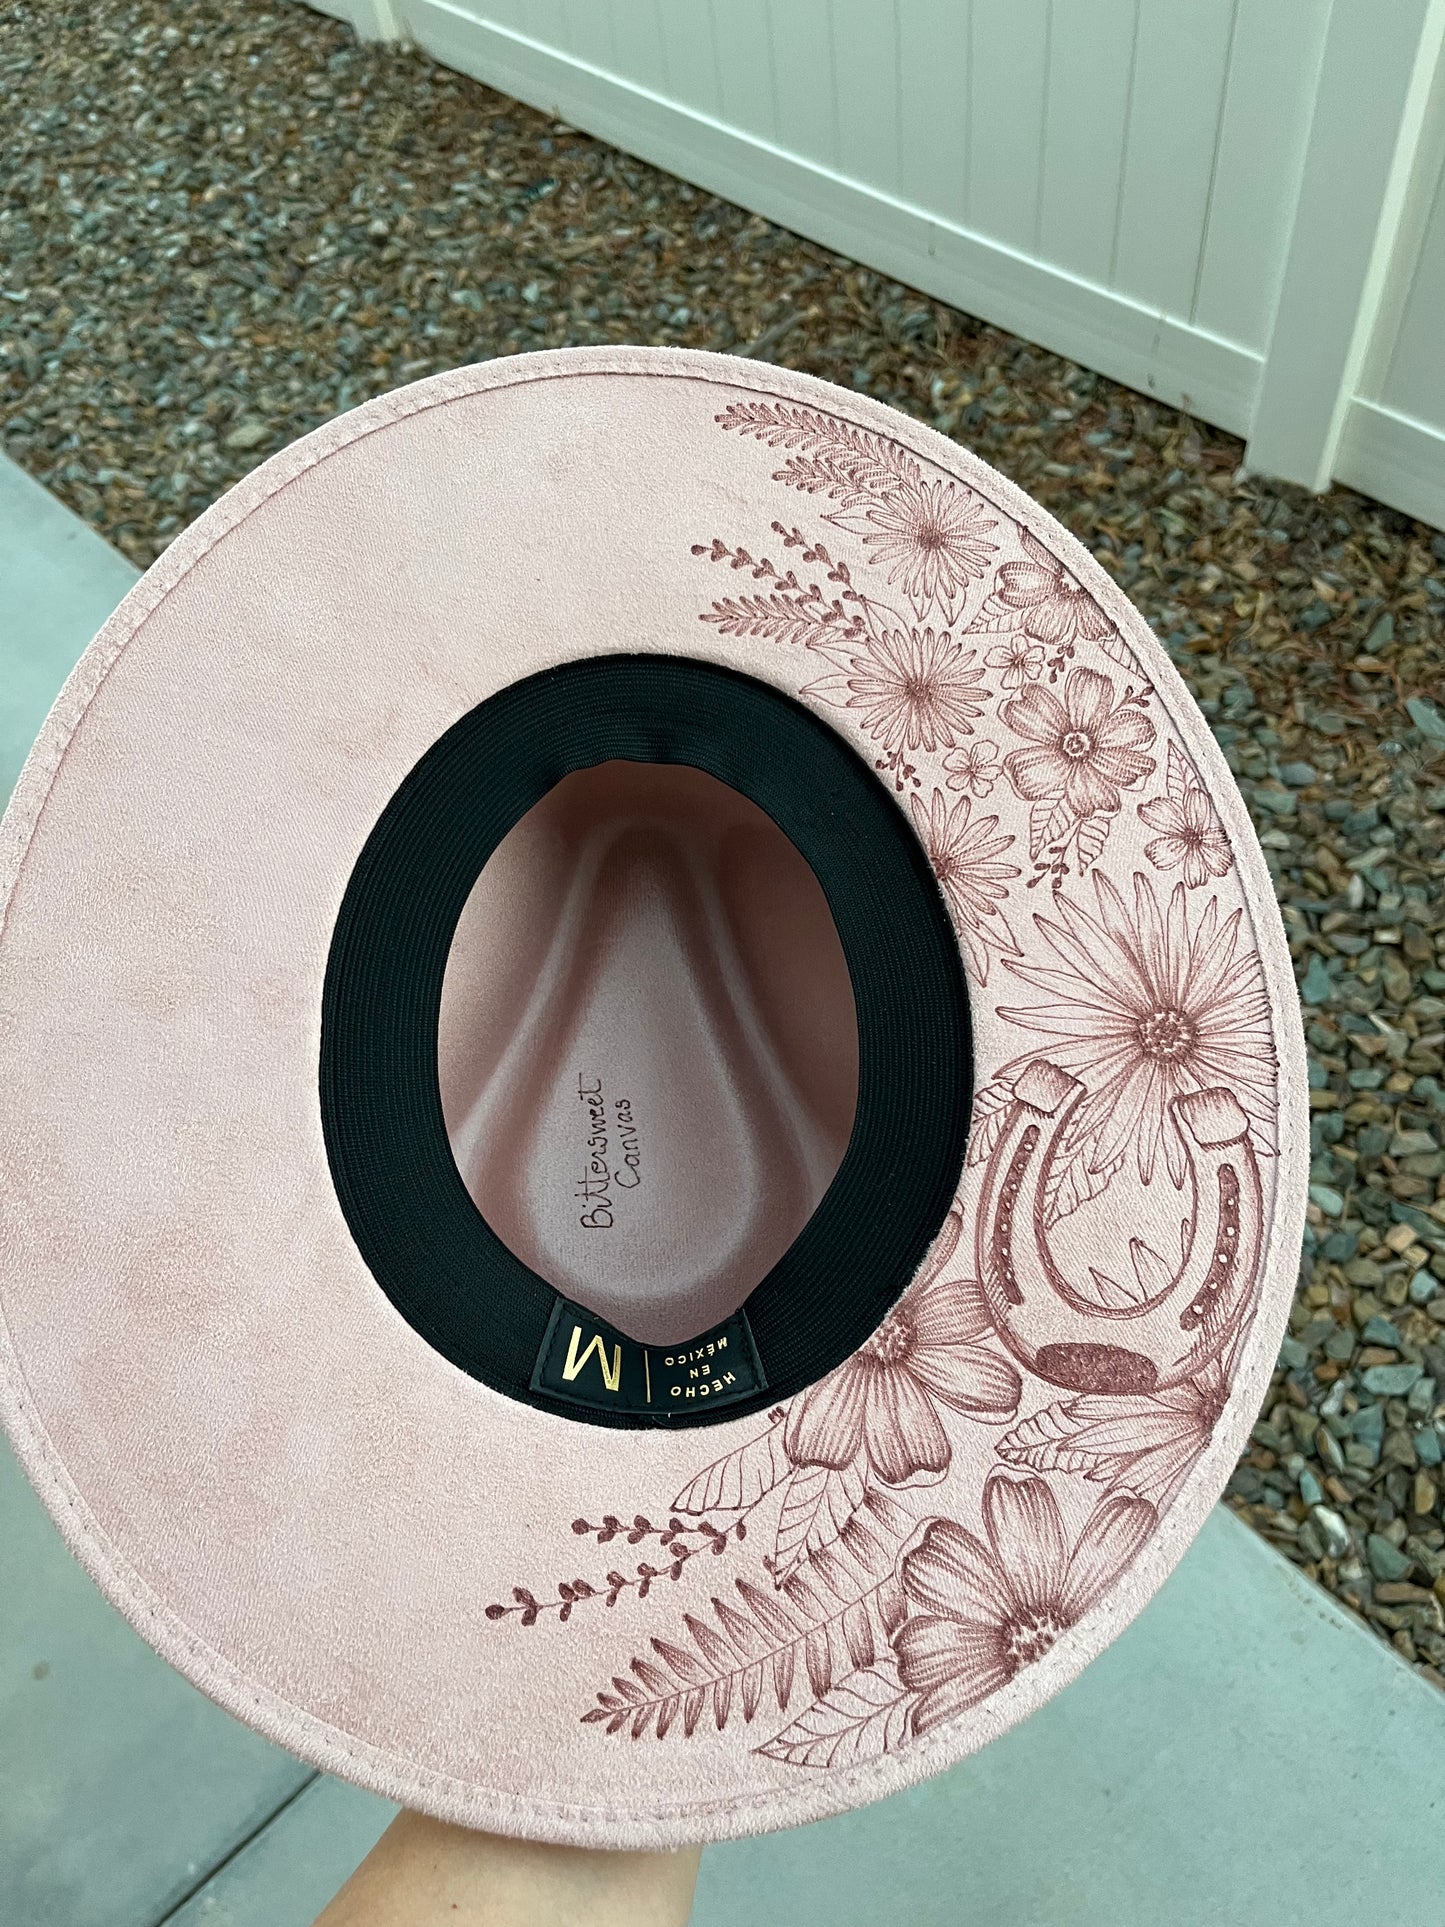 Blush pink floral horseshoe burned suede wide brim rancher hat